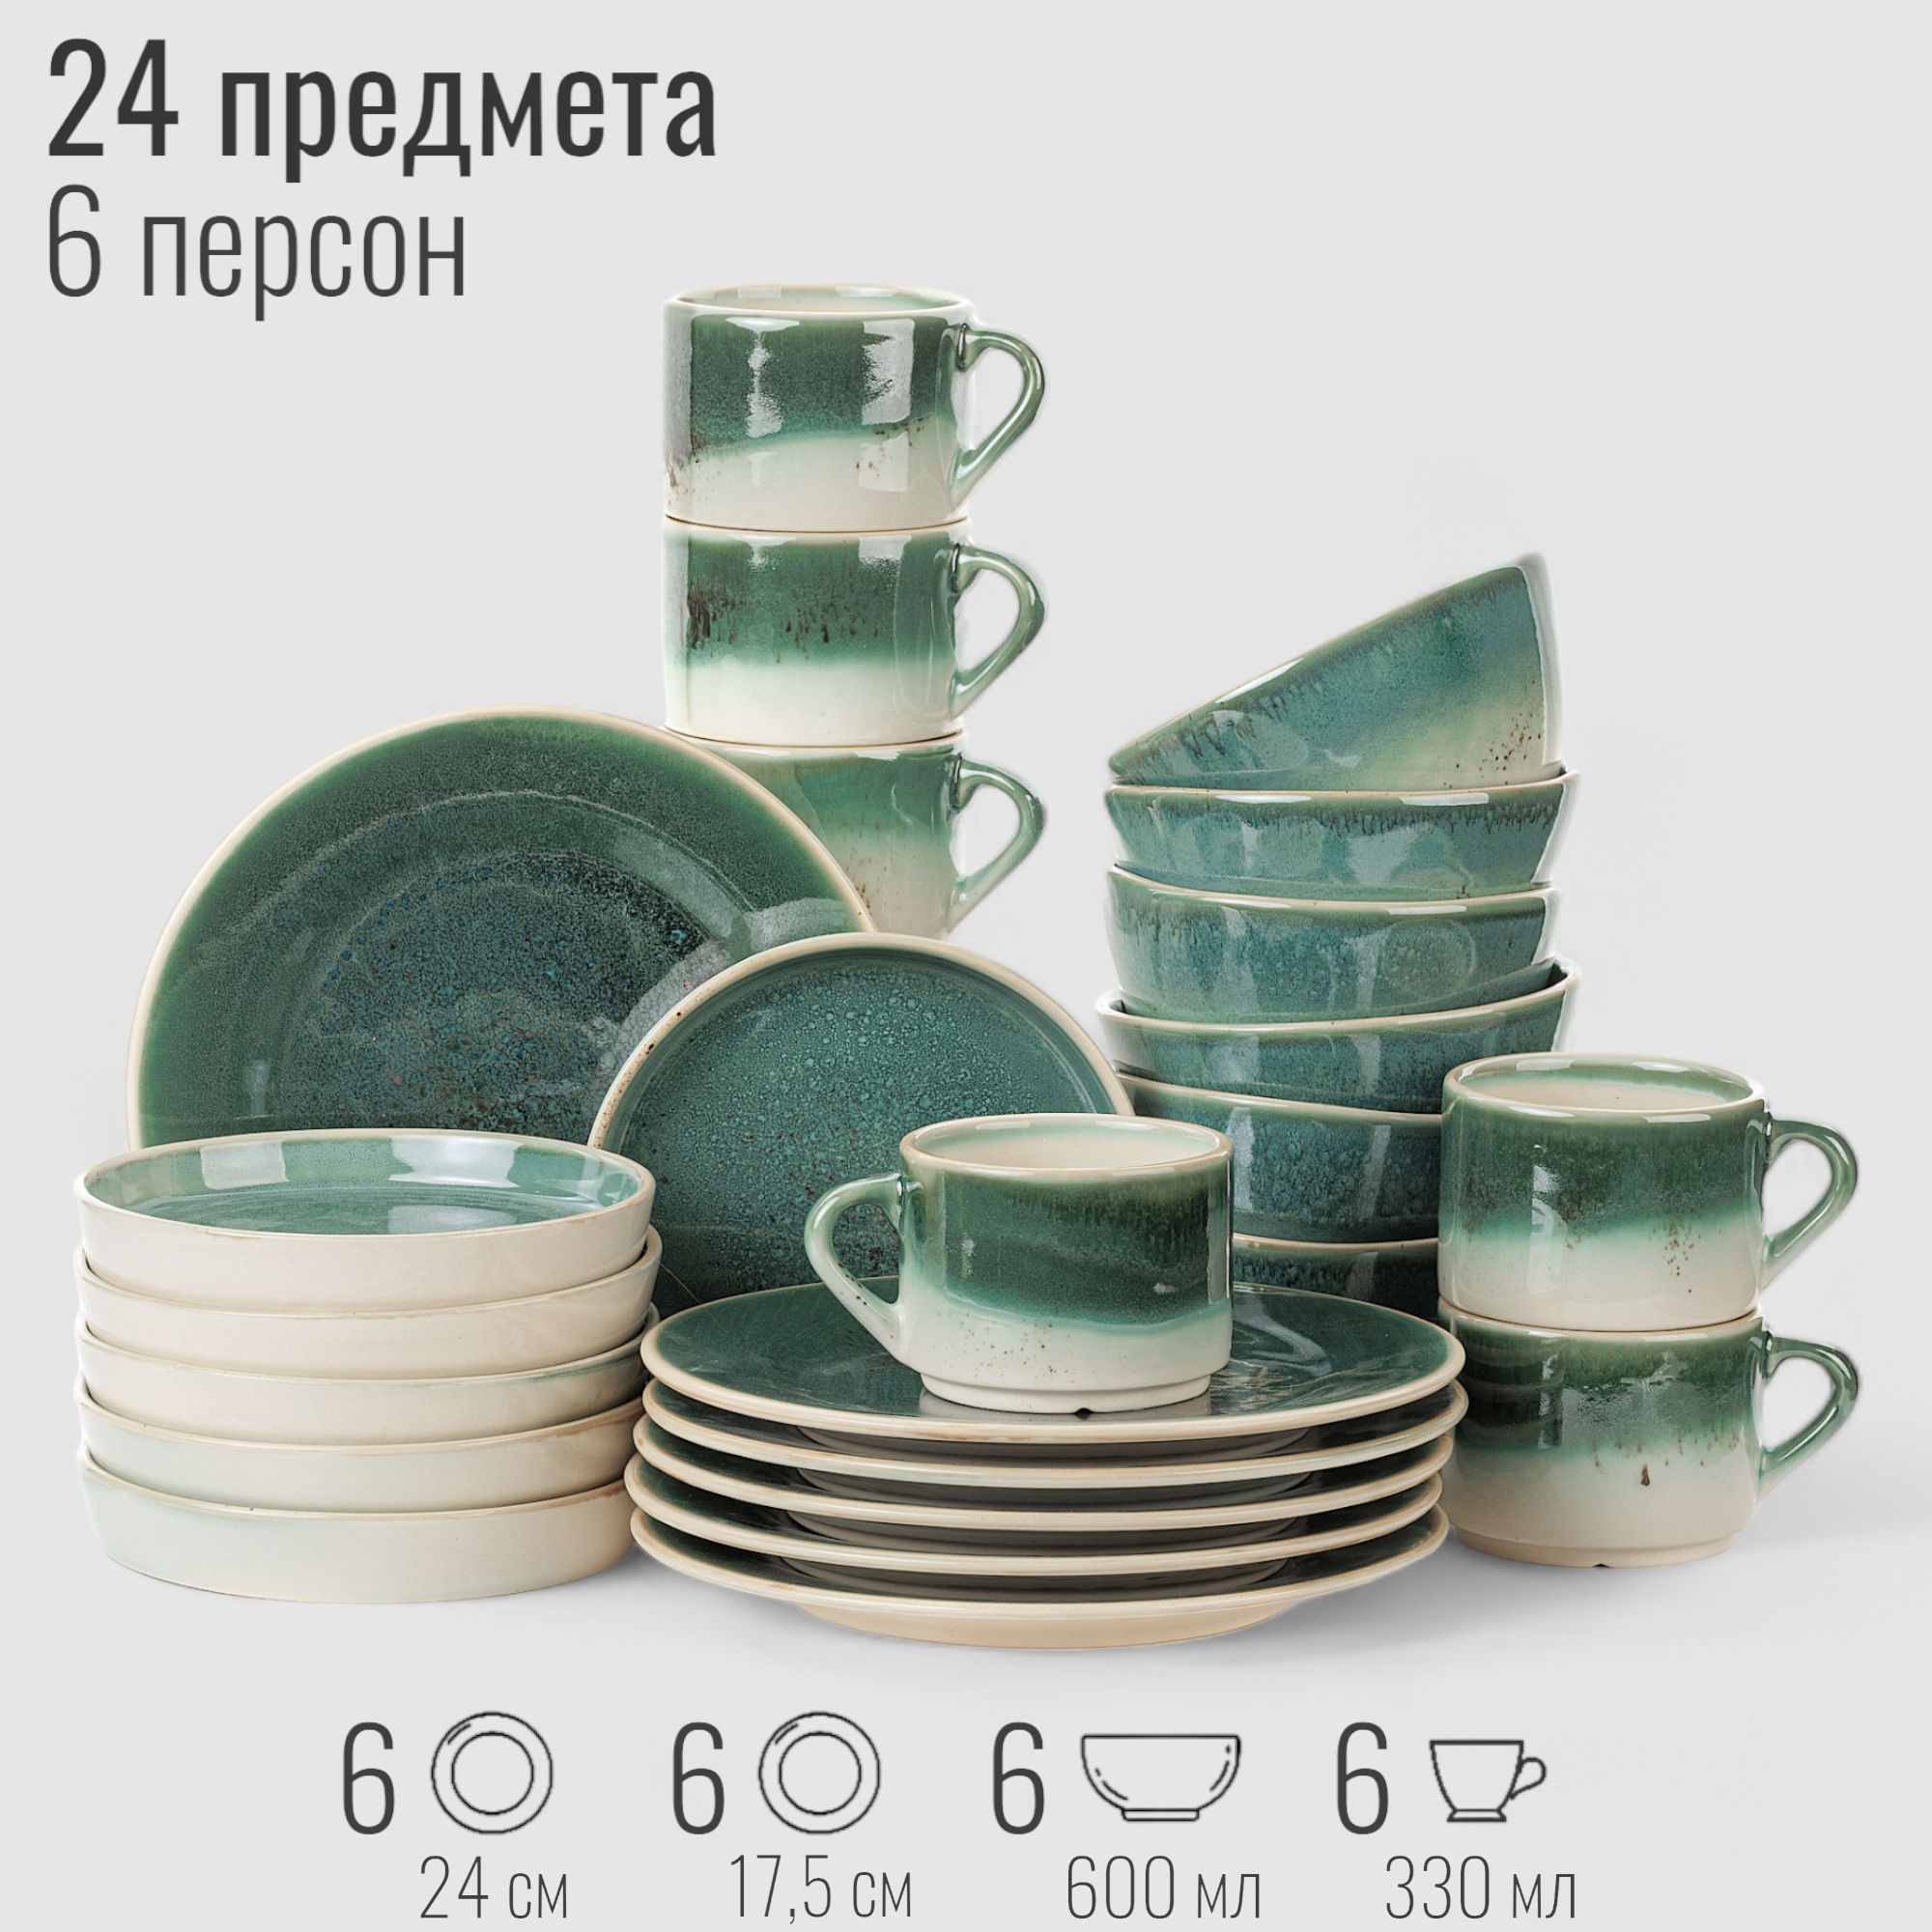 Набор посуды столовой на 6 персон, 24 предмета "Бордер", фарфор, сервиз обеденный Эрбосо Реаттиво